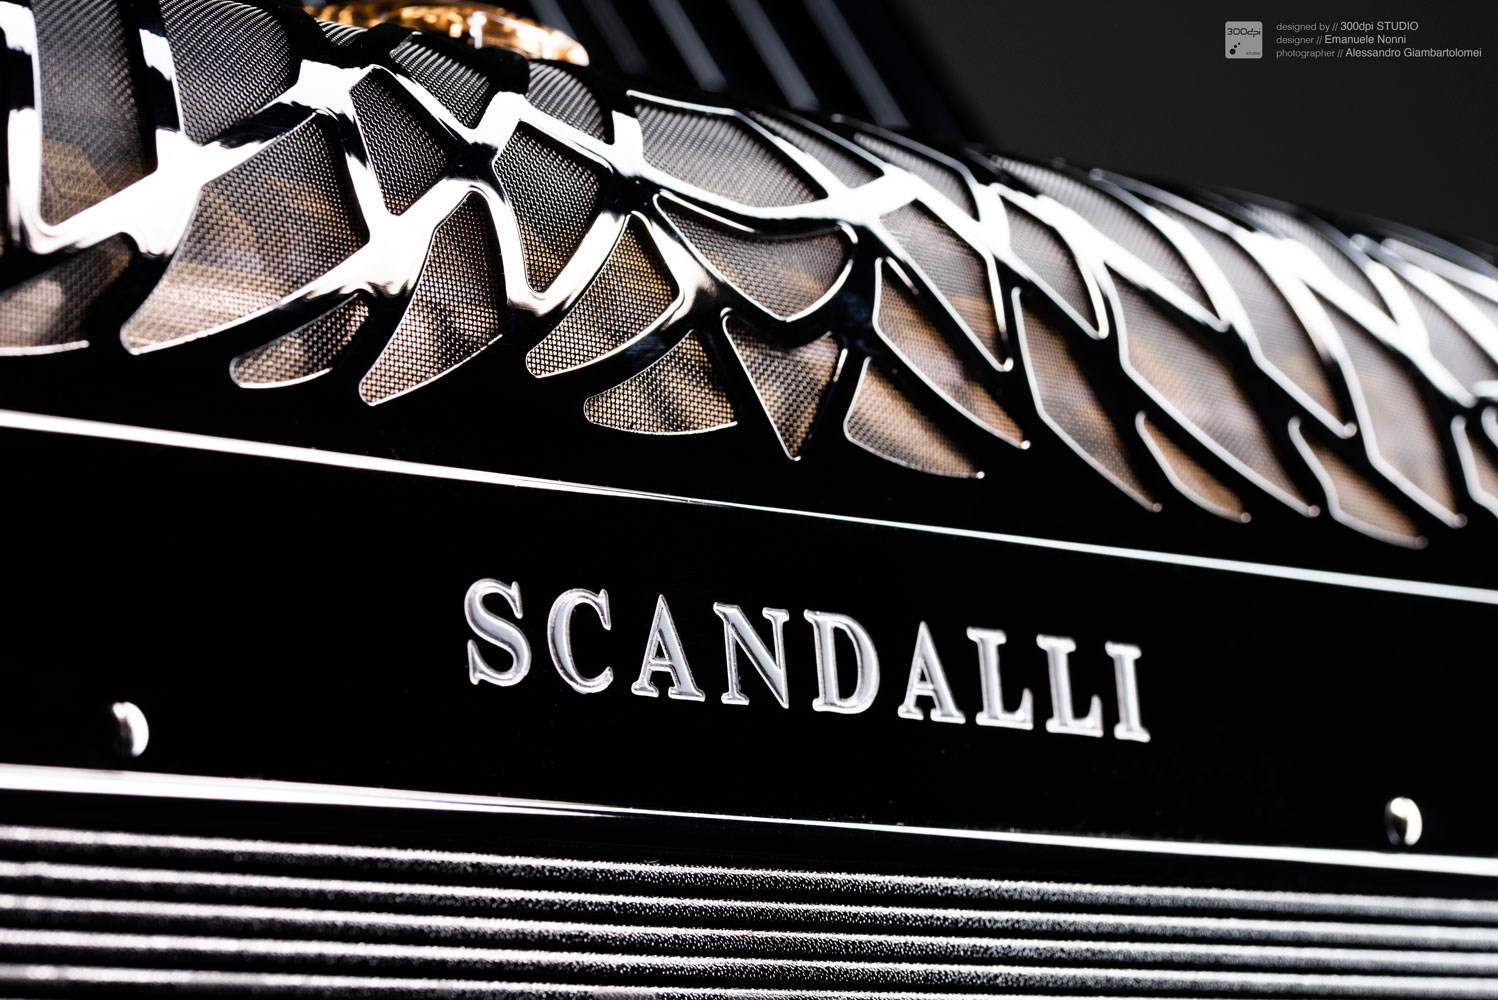 Dettaglio traforo-logo fisarmonica AIR - Scandalli Accordions - design Emanuele Nonni - 300dpi STUDIO